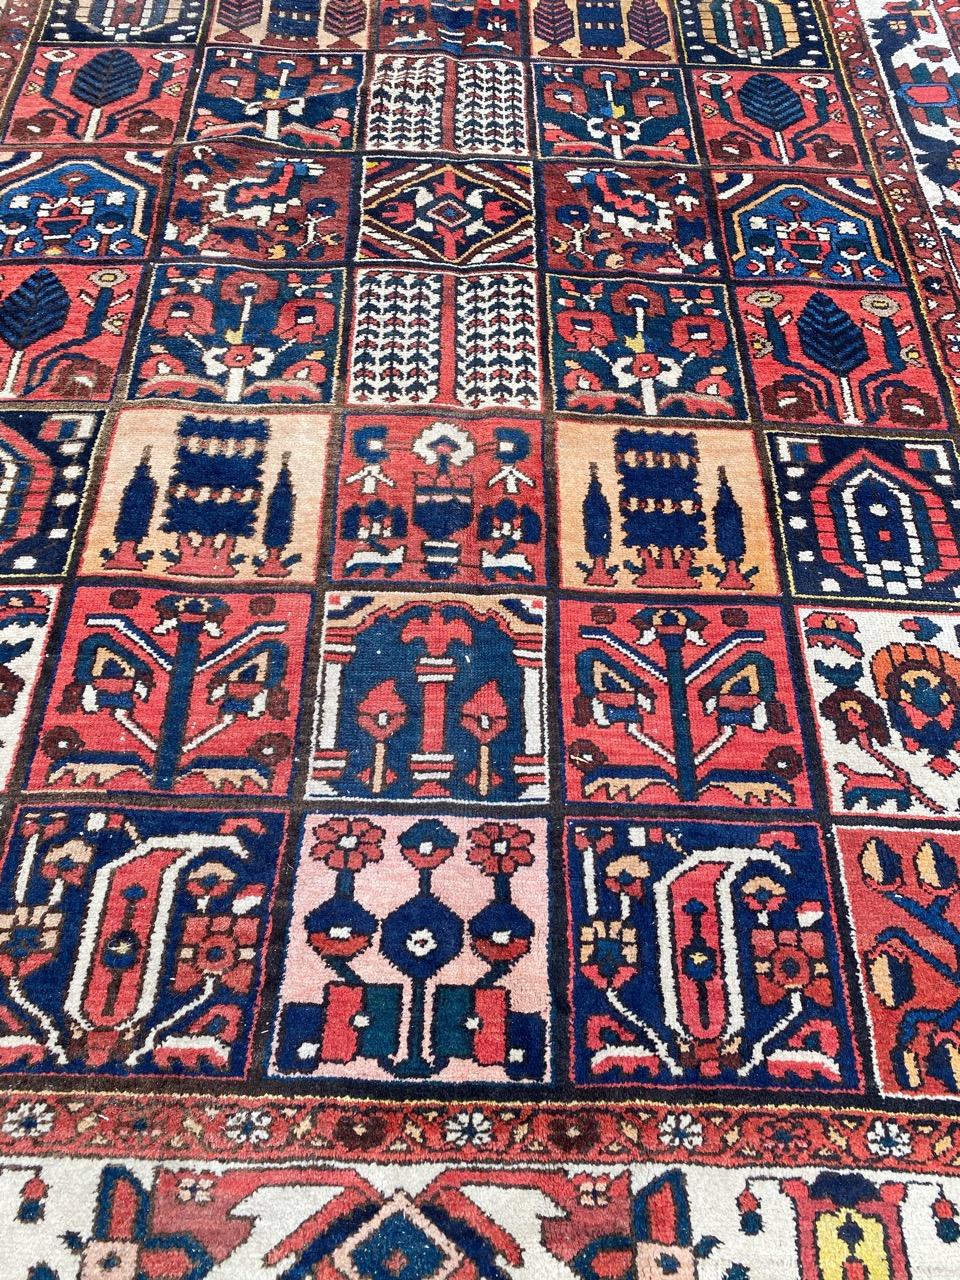 Schöner Teppich aus der Mitte des Jahrhunderts mit geometrischem und stilisiertem Blumenmuster und schönen Farben, komplett handgeknüpft mit Wollsamt auf Baumwollgrund.